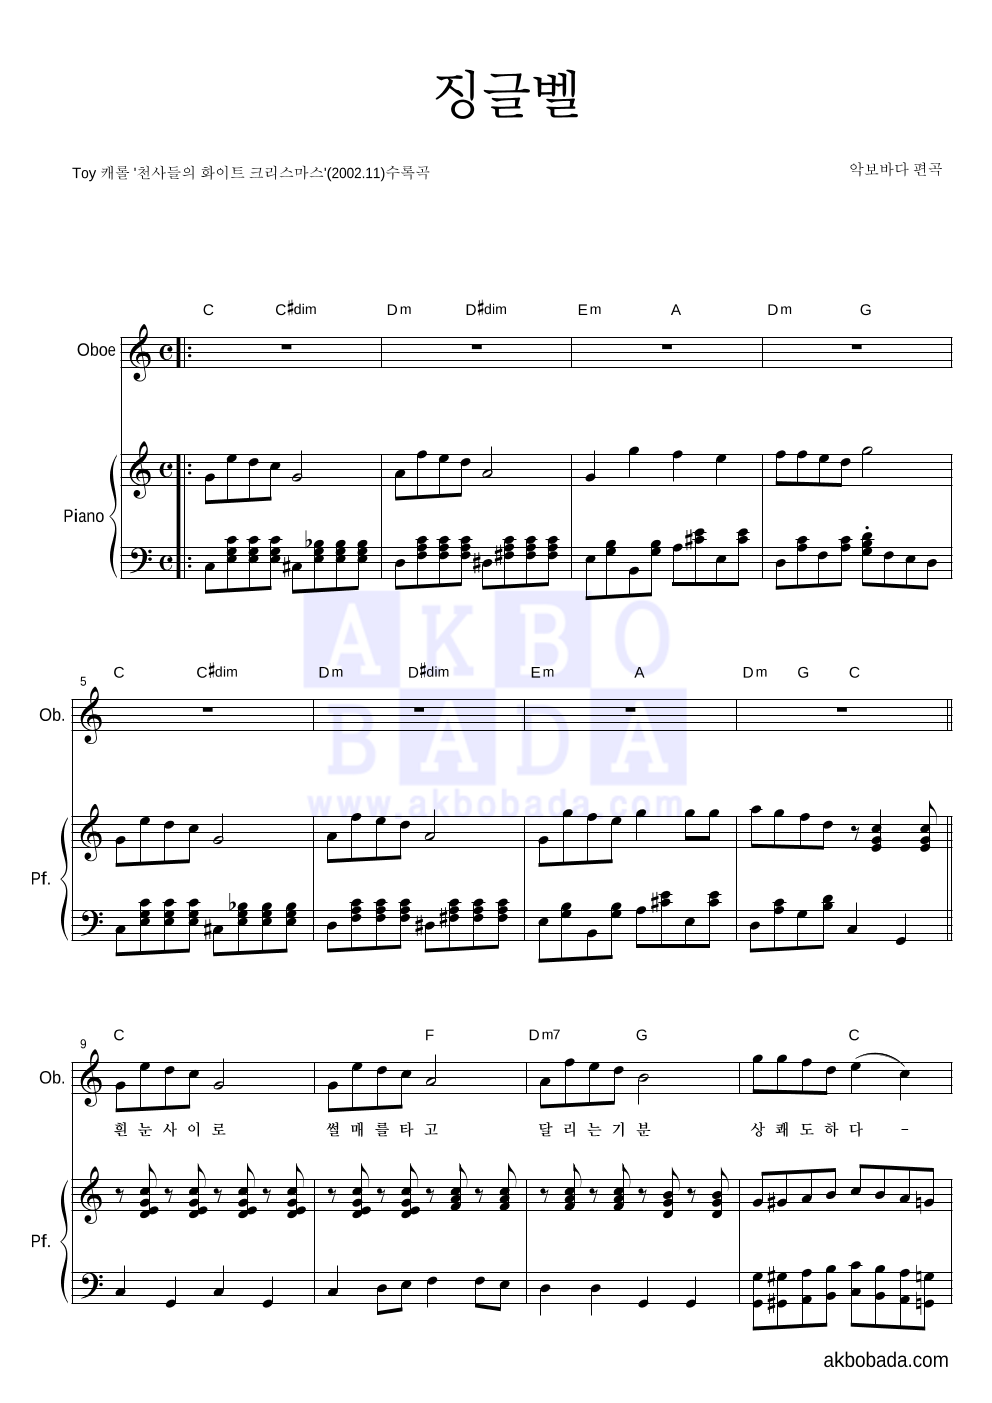 크리스마스 캐롤 - 징글벨 (흰눈사이로) 오보에&피아노 악보 